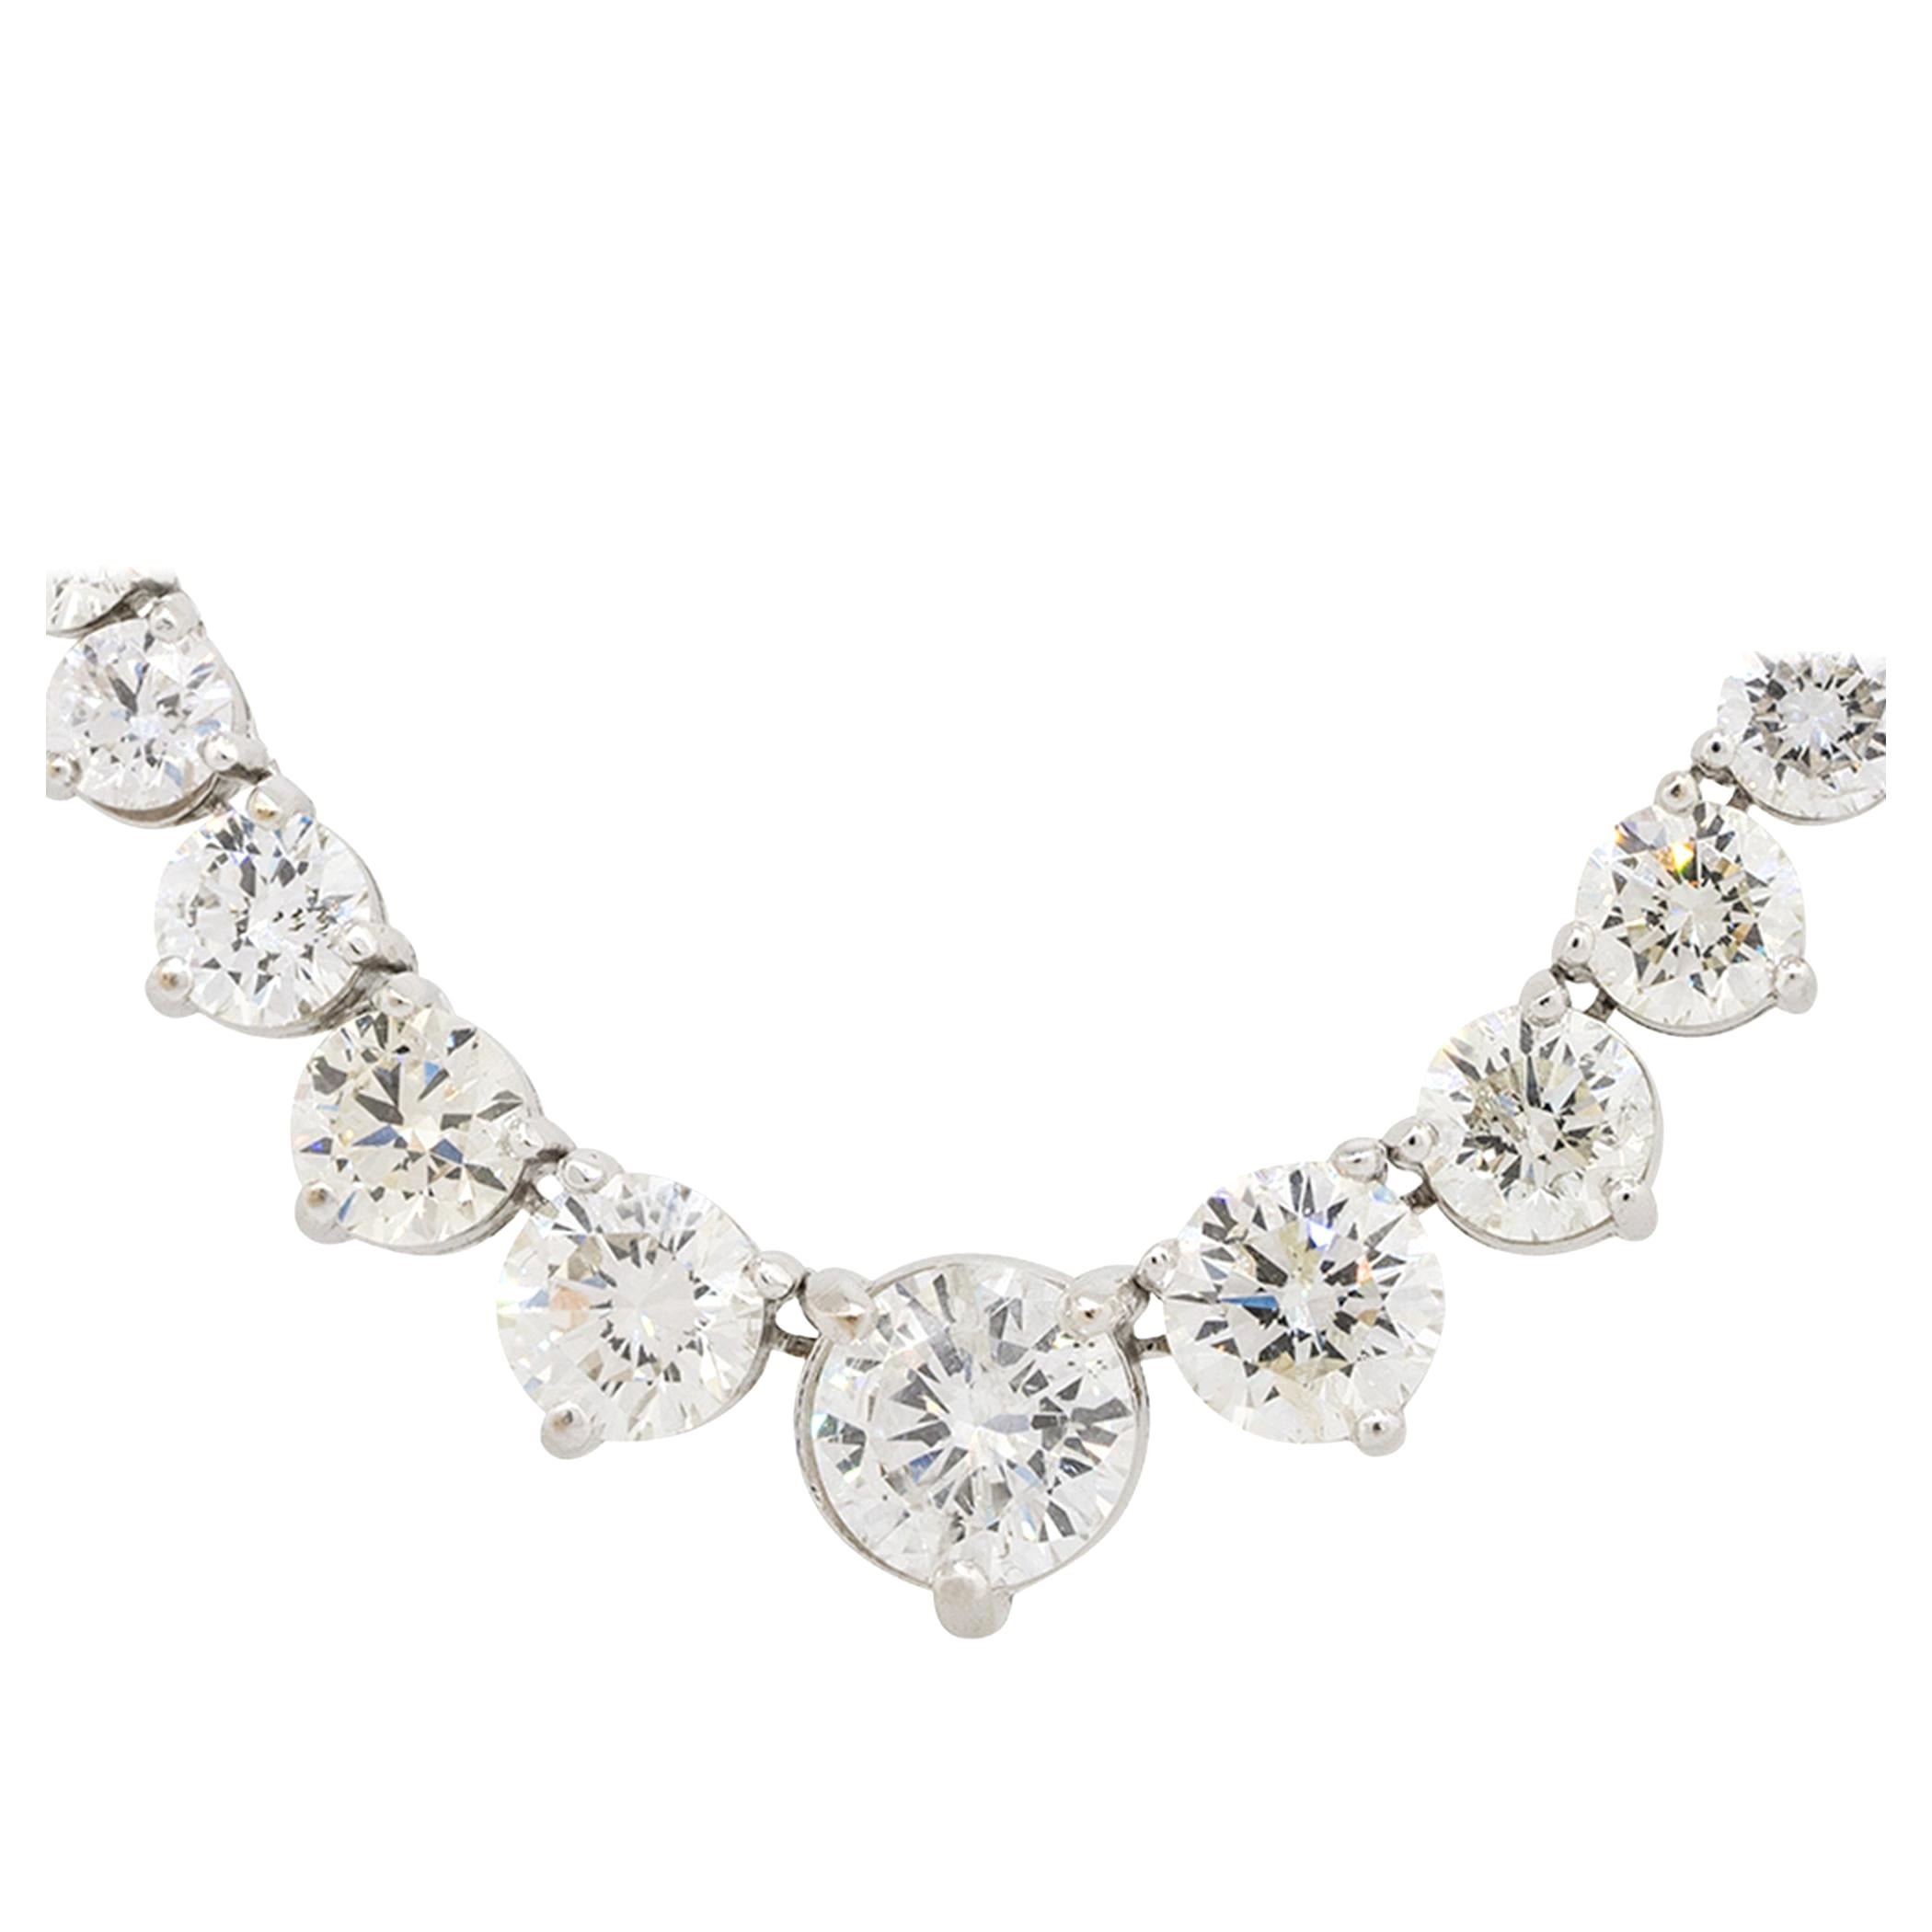 22 Karat abgestufte Diamant-Tennis-Halskette aus 18 Karat, auf Lager